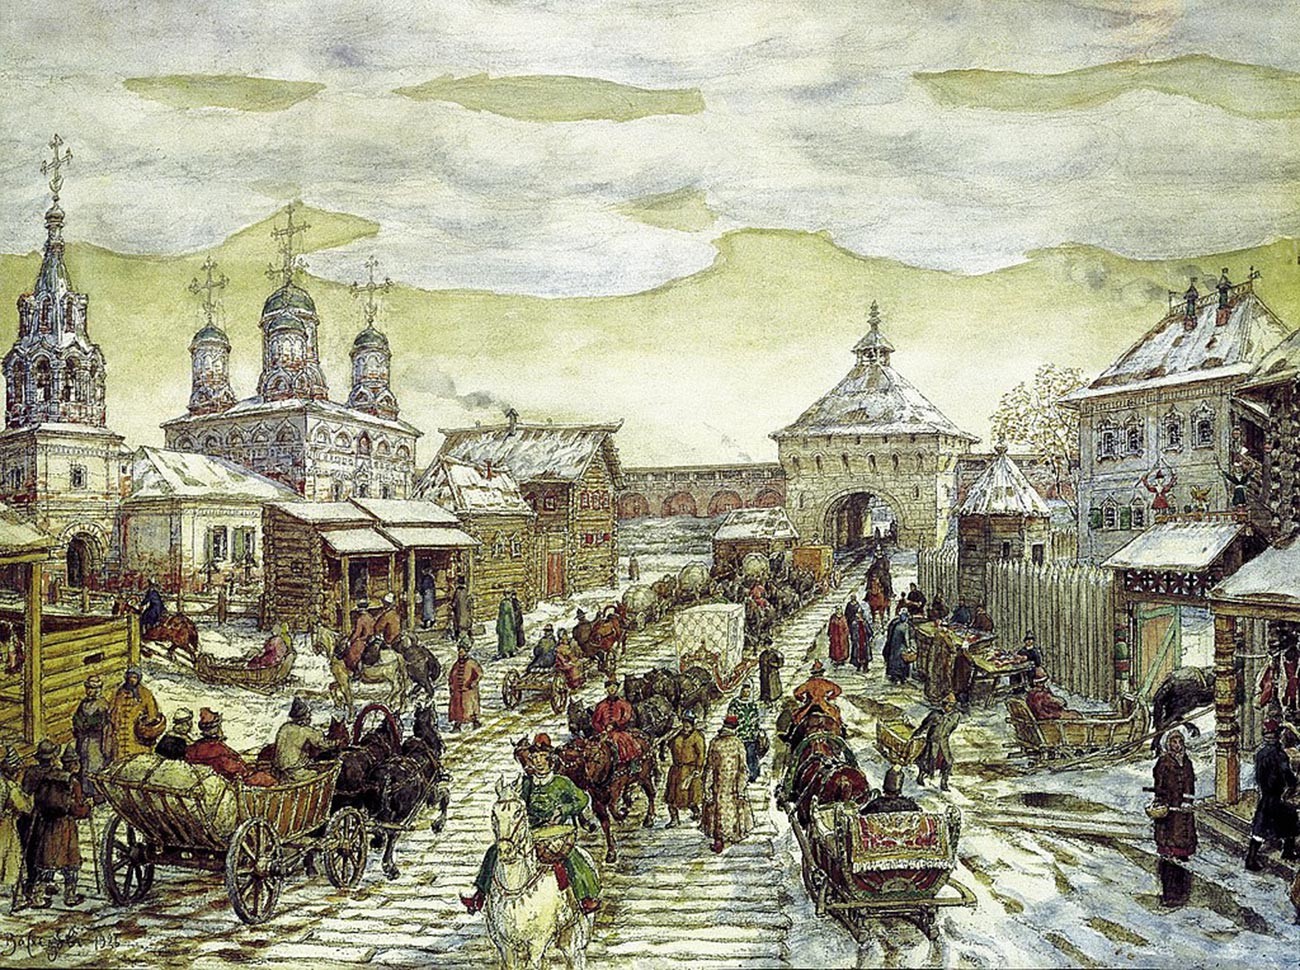 Dipinto di Apollinarij Vasnetsov (1856-1933) “Alla Porta Mjasnitskij della Città Bianca nel XVII secolo”
